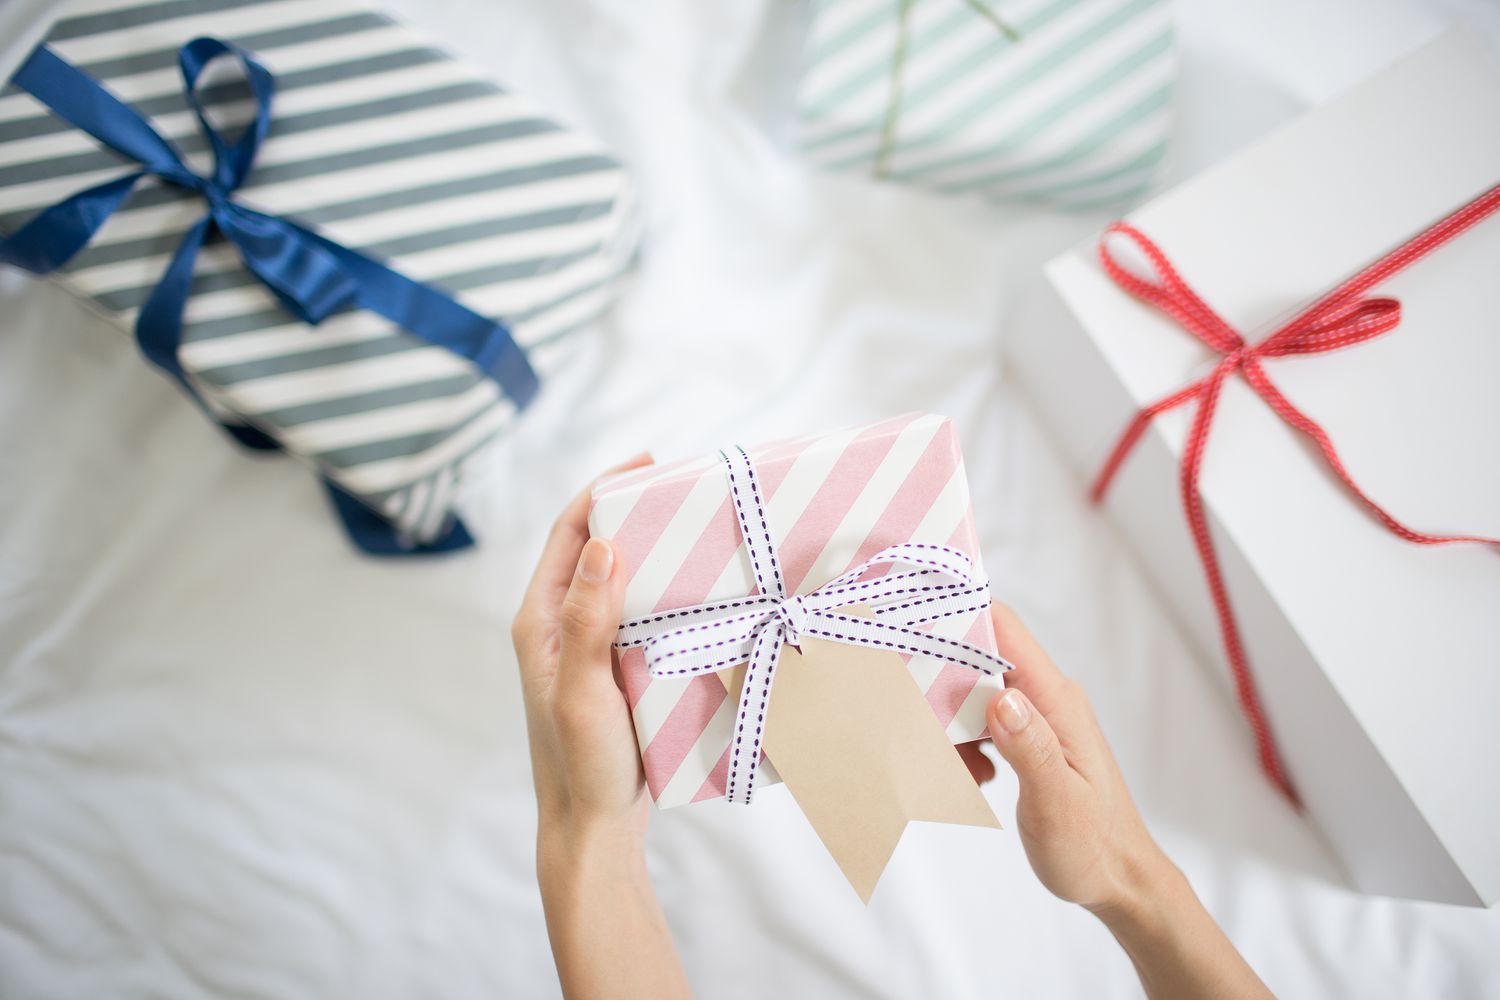 女牵手礼盒与礼物标签在床上